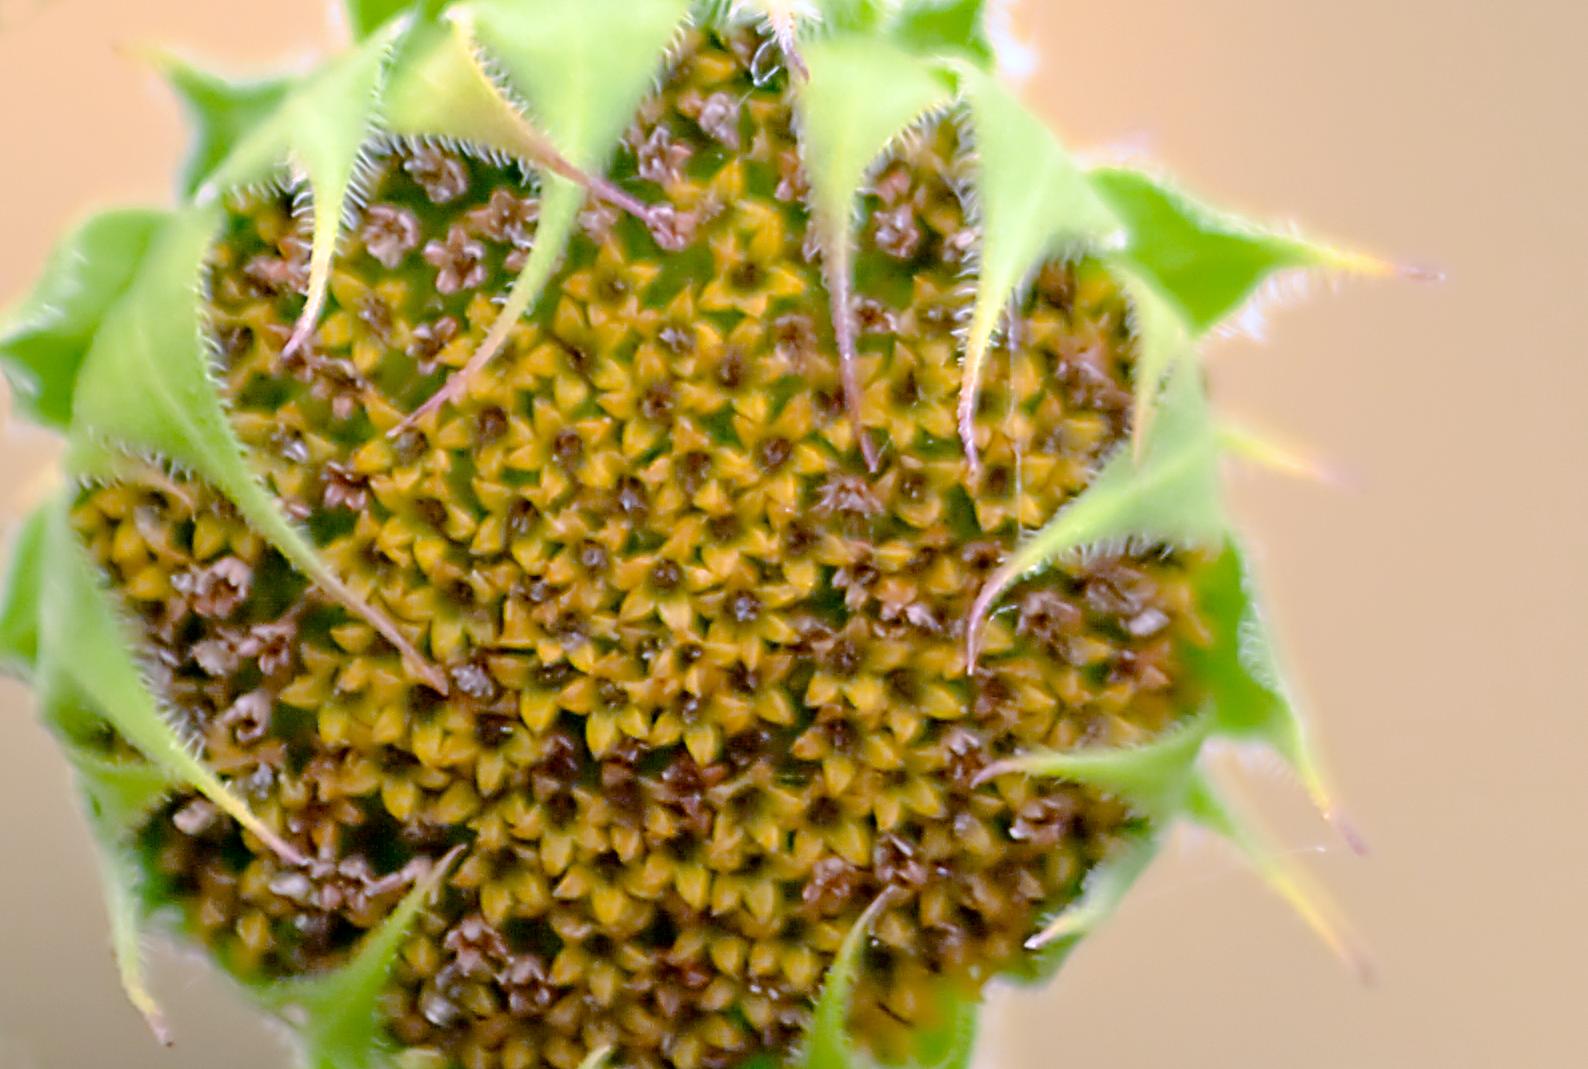 Title: Sunflower Sunday | Author: Carl Von Canon | Source: biggreymare | License: CC BY-NC-ND 2.0